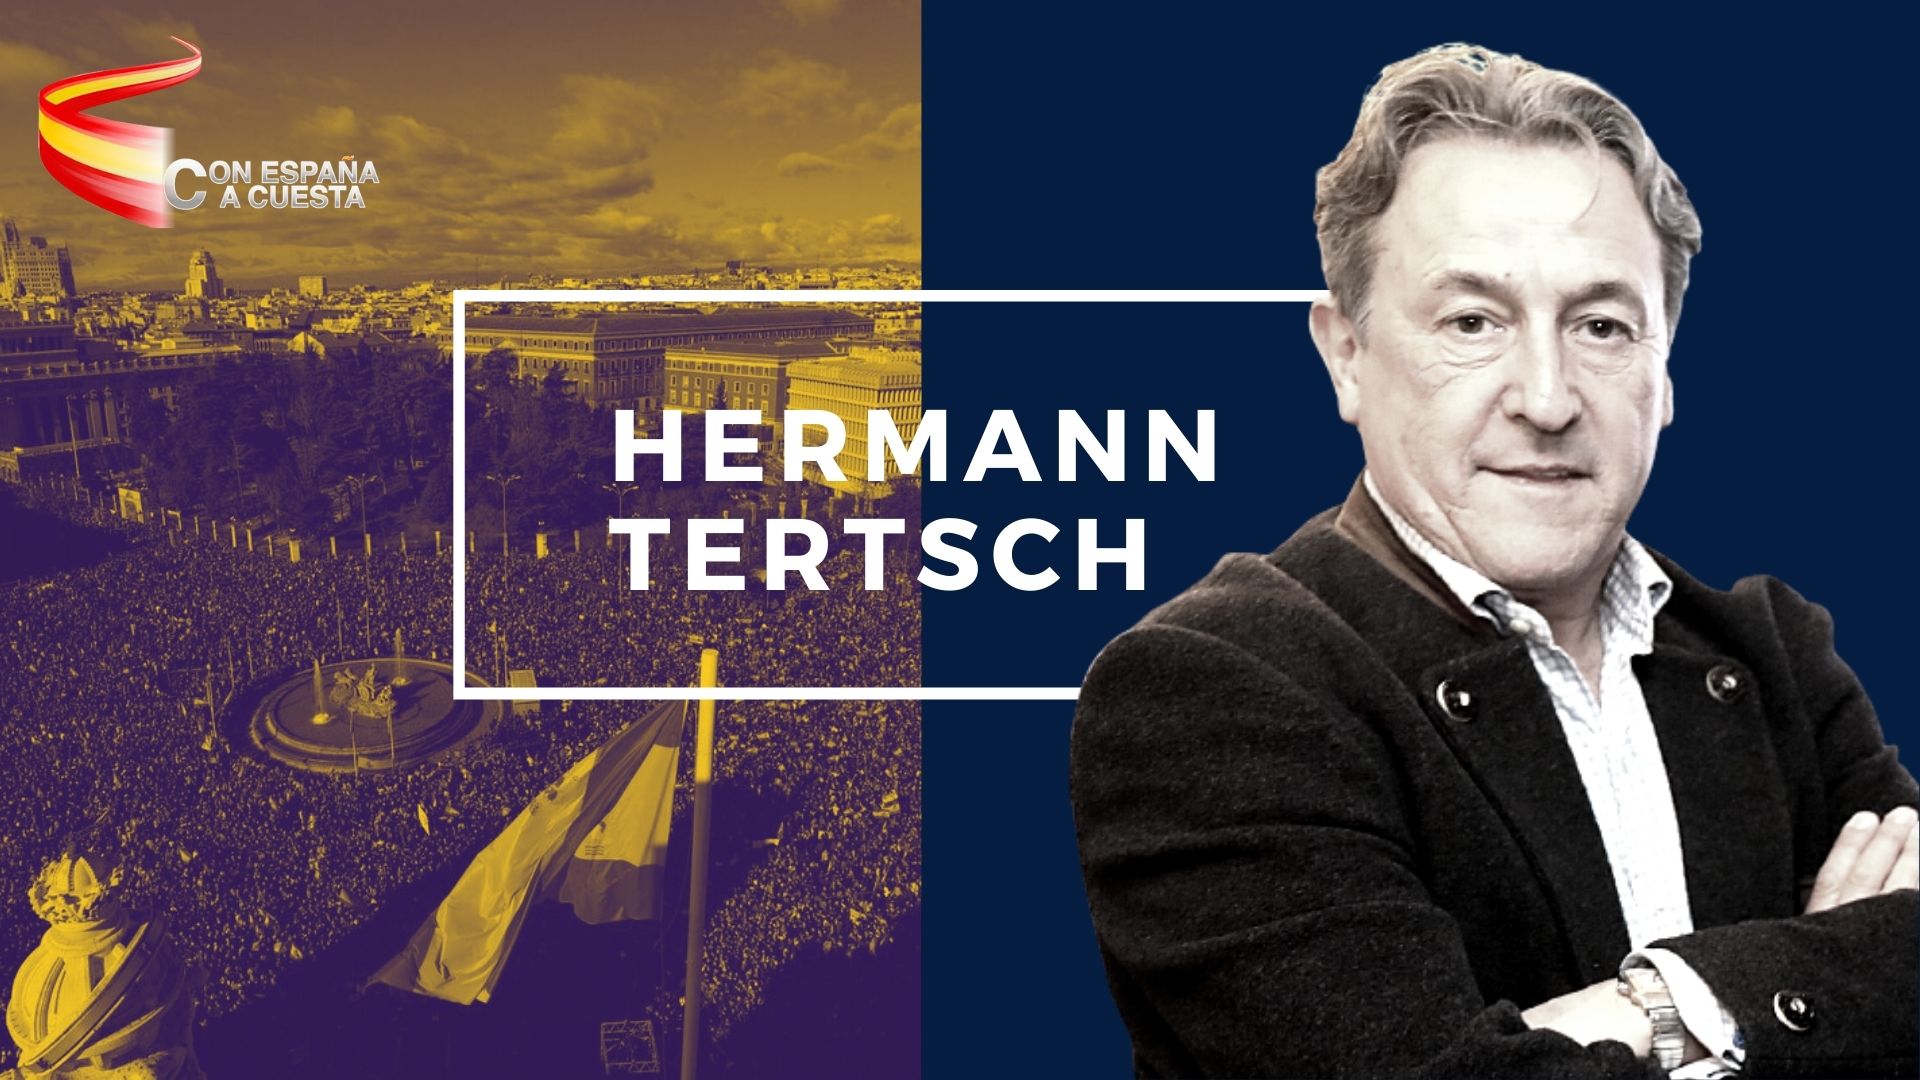 Herman Tertsch